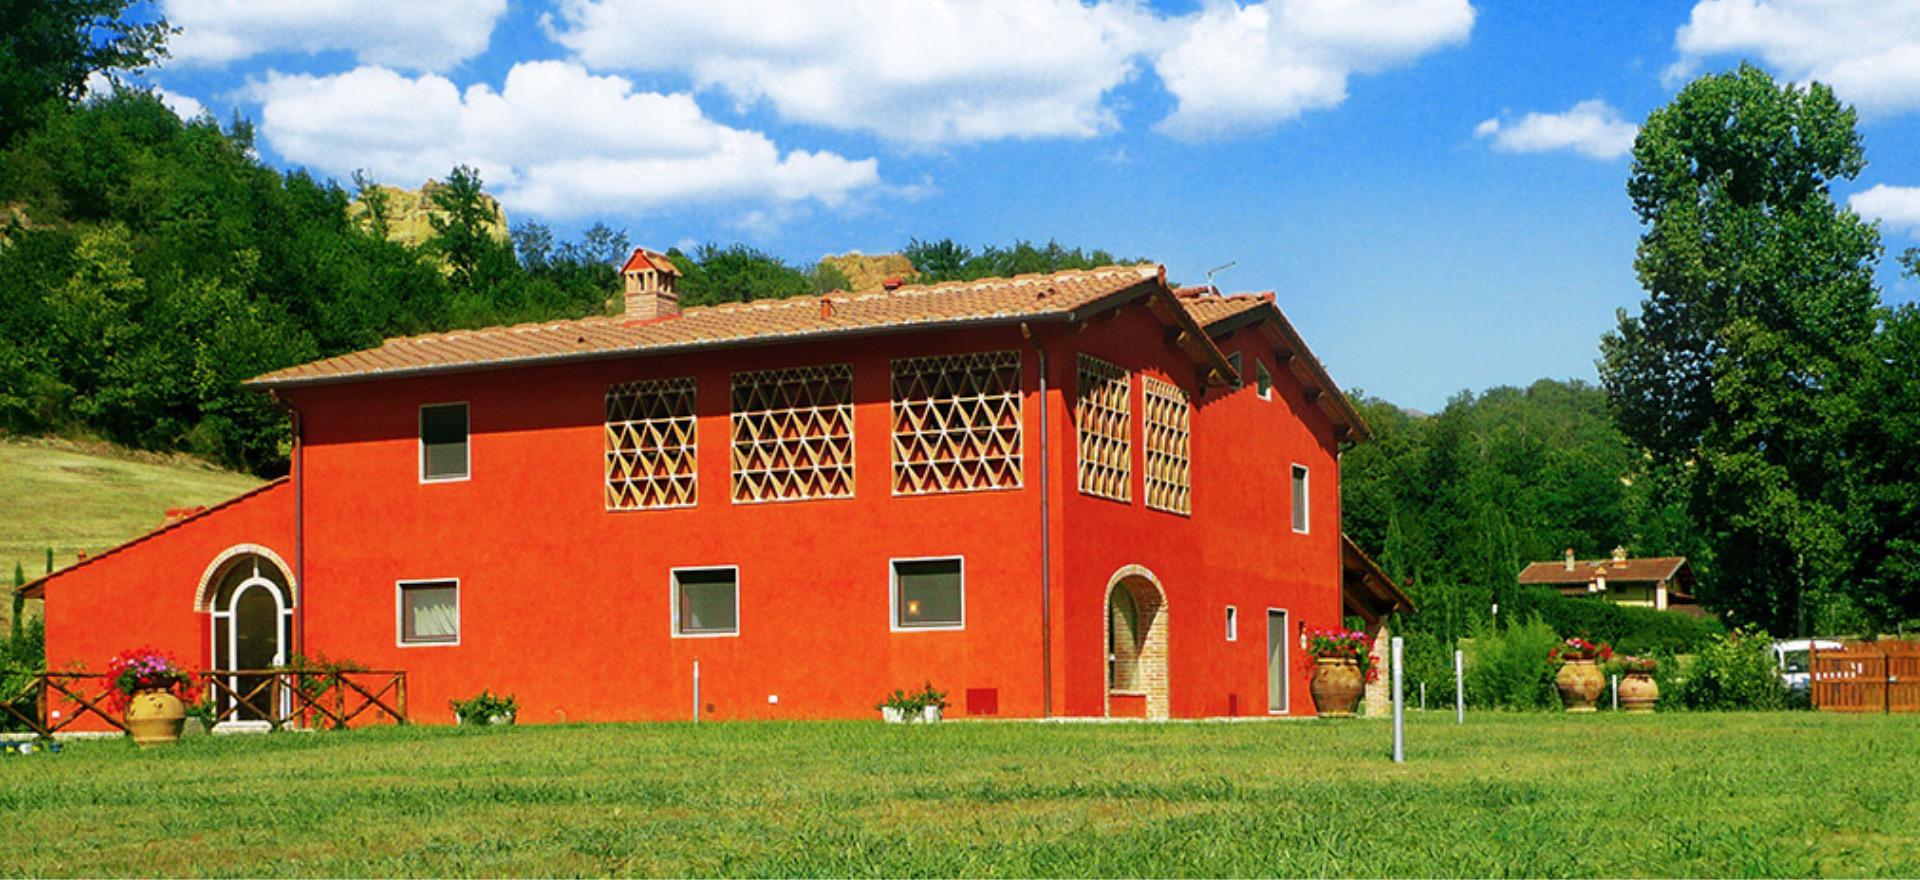 Agriturismo Toskana Agriturismo mit Ferienhaus, schönes Landgut Nähe Florenz